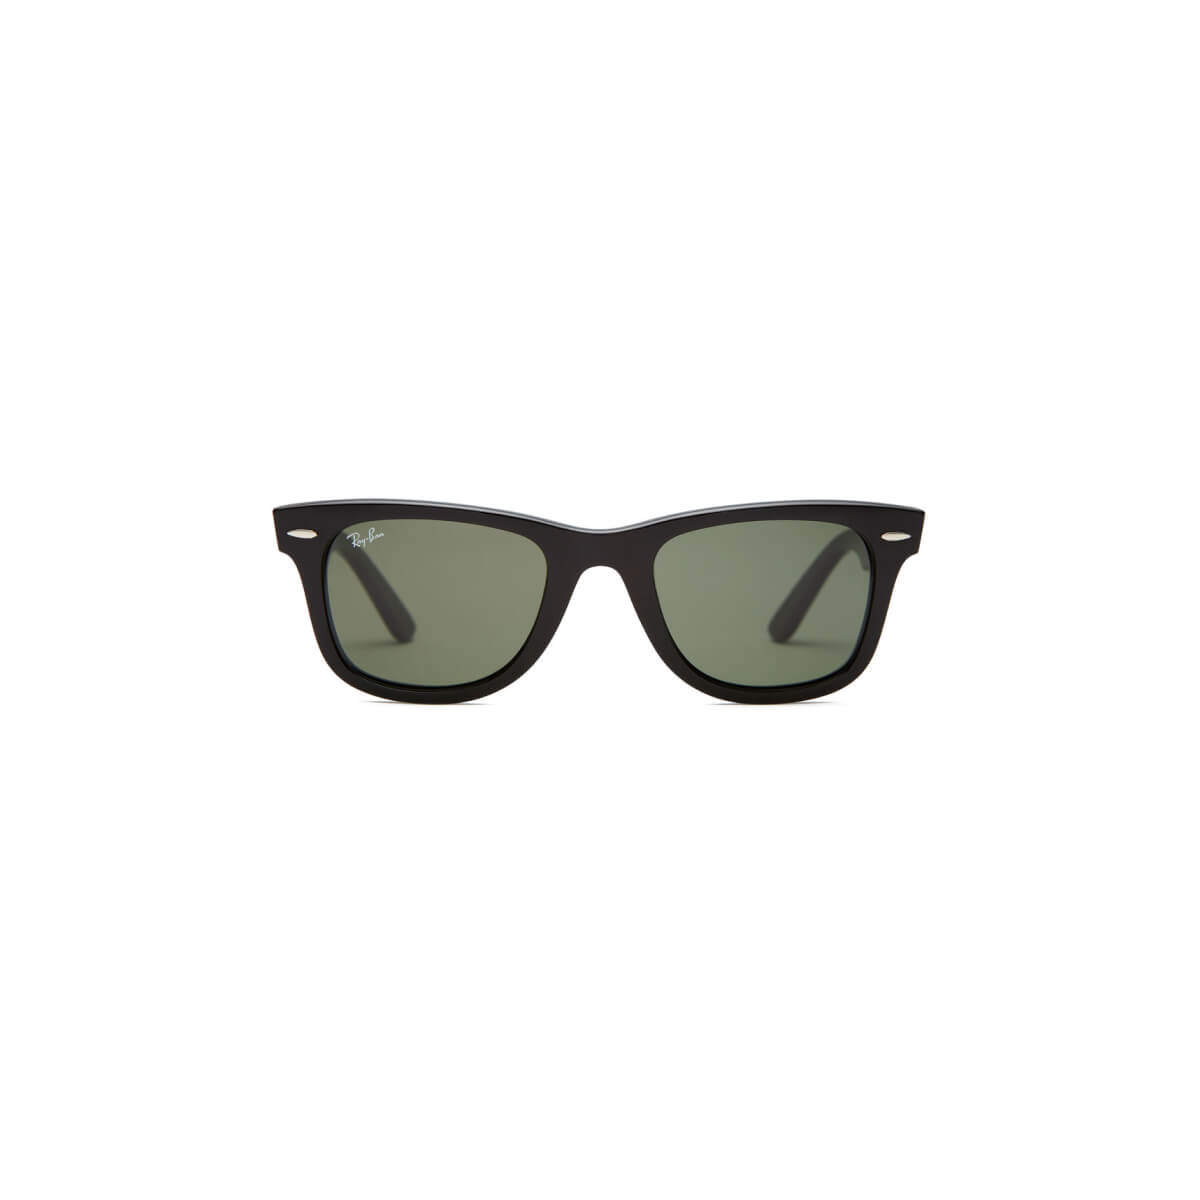 Ray Ban Original Wayfarer Sunglasses Goop